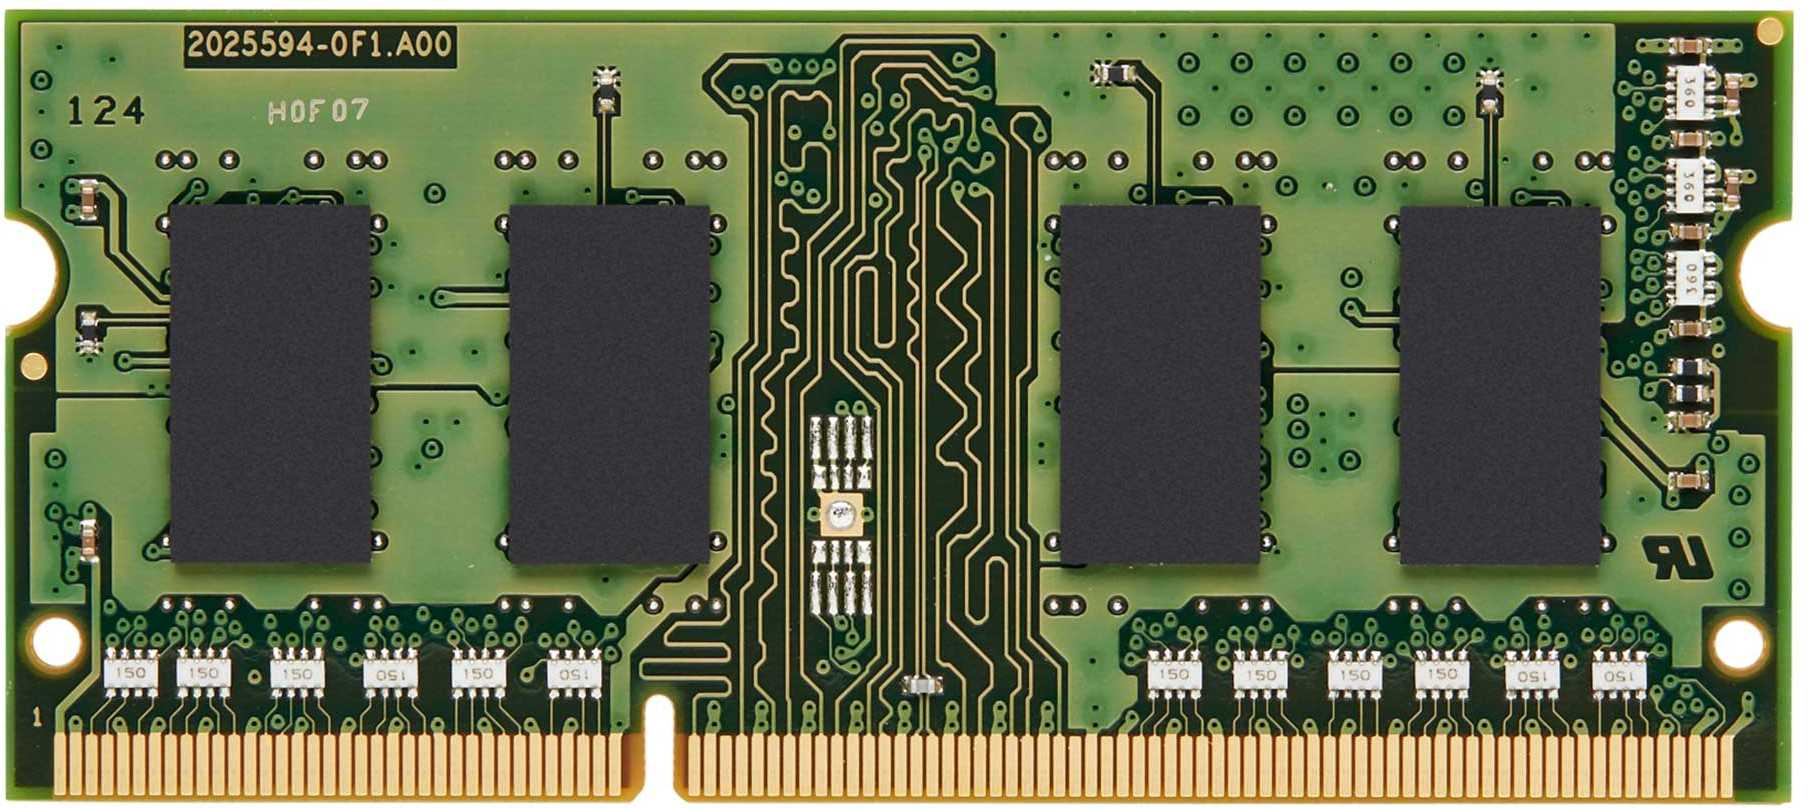  Kingston KVR16LS11/8WP DDR3L 8Gb 1600MHz RTL PC3-12800 CL11 SO-DIMM 204-pin 1.35 dual rank